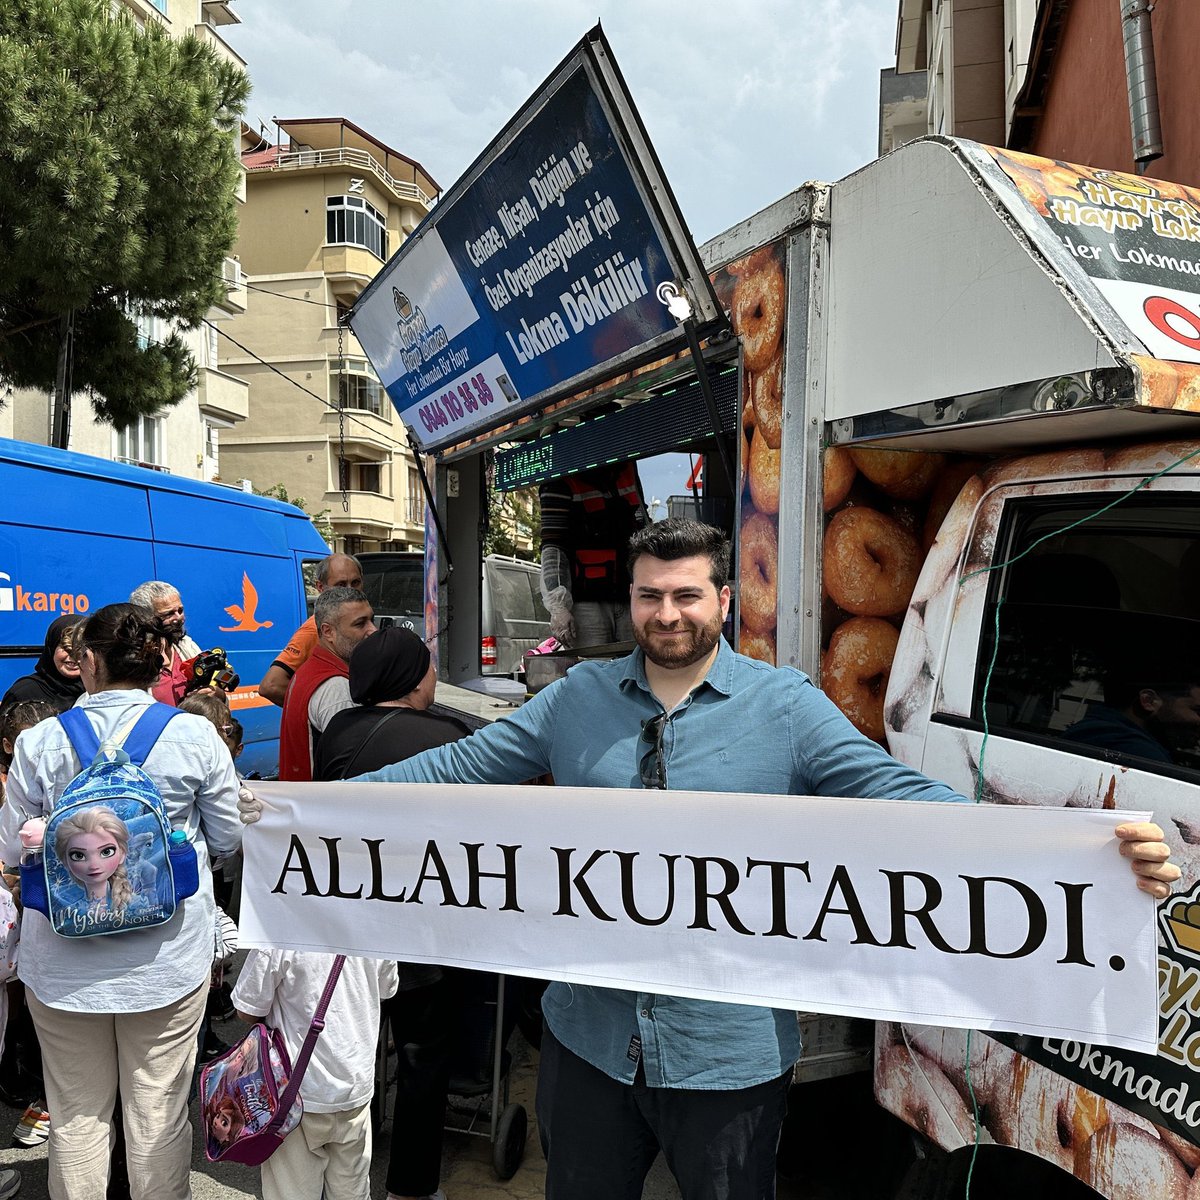 İstanbul Maltepe'de sevgilisinden ayrılan bir kişi, 'Allah kurtardı' diyerek lokma döktürdü.